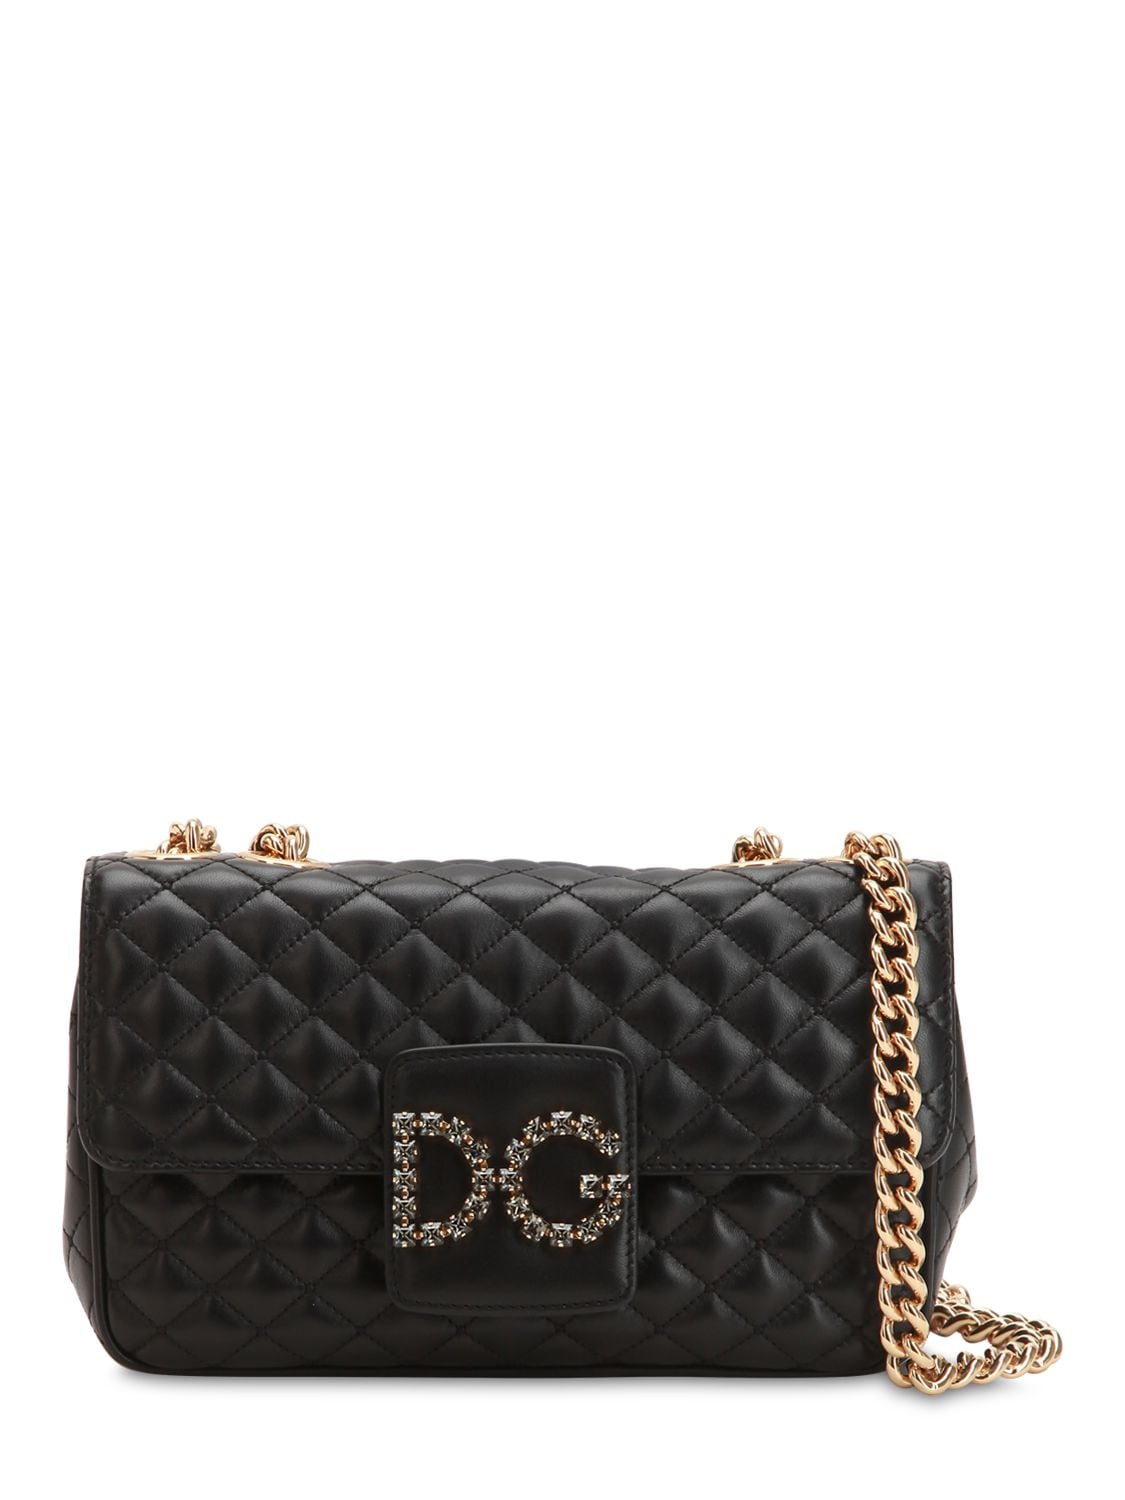 Dolce & Gabbana Quilted Leather Shoulder Bag In Black